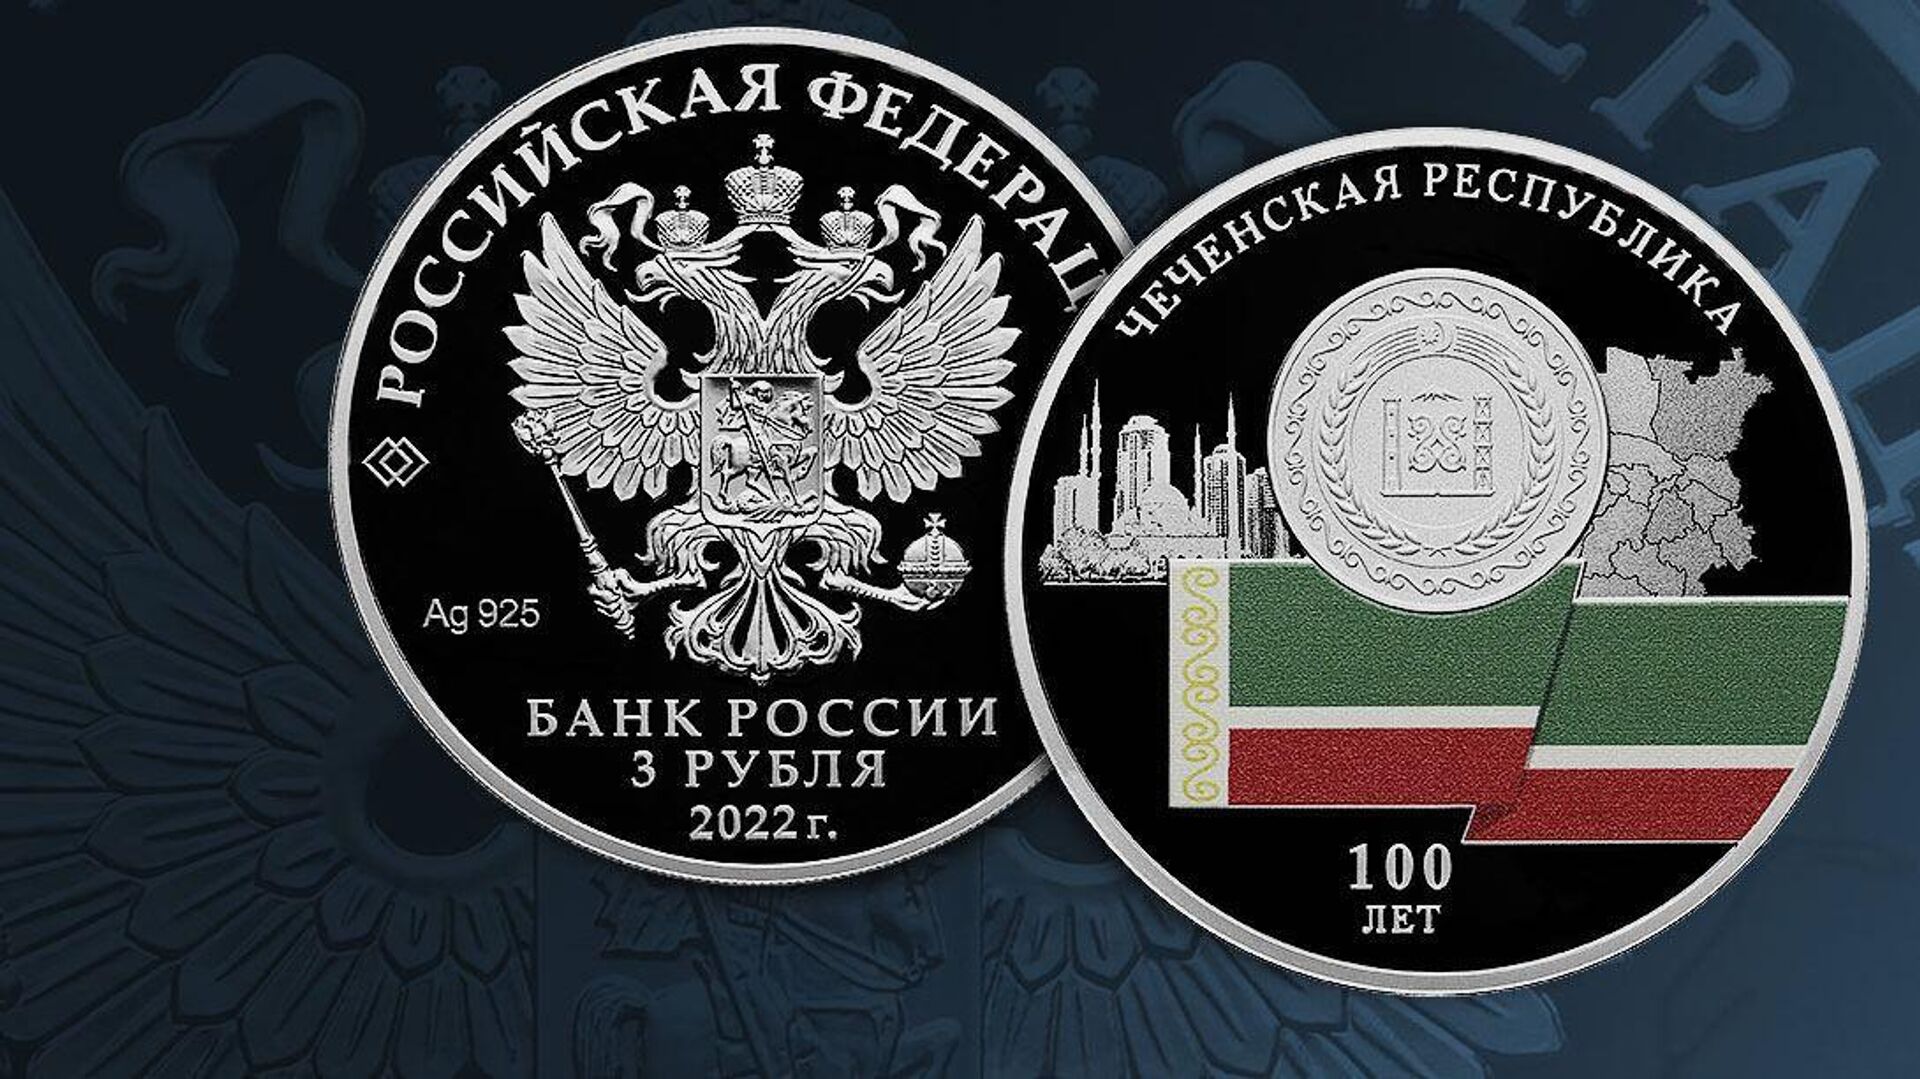 3 Рубля 100-летие образования Чеченской Республики